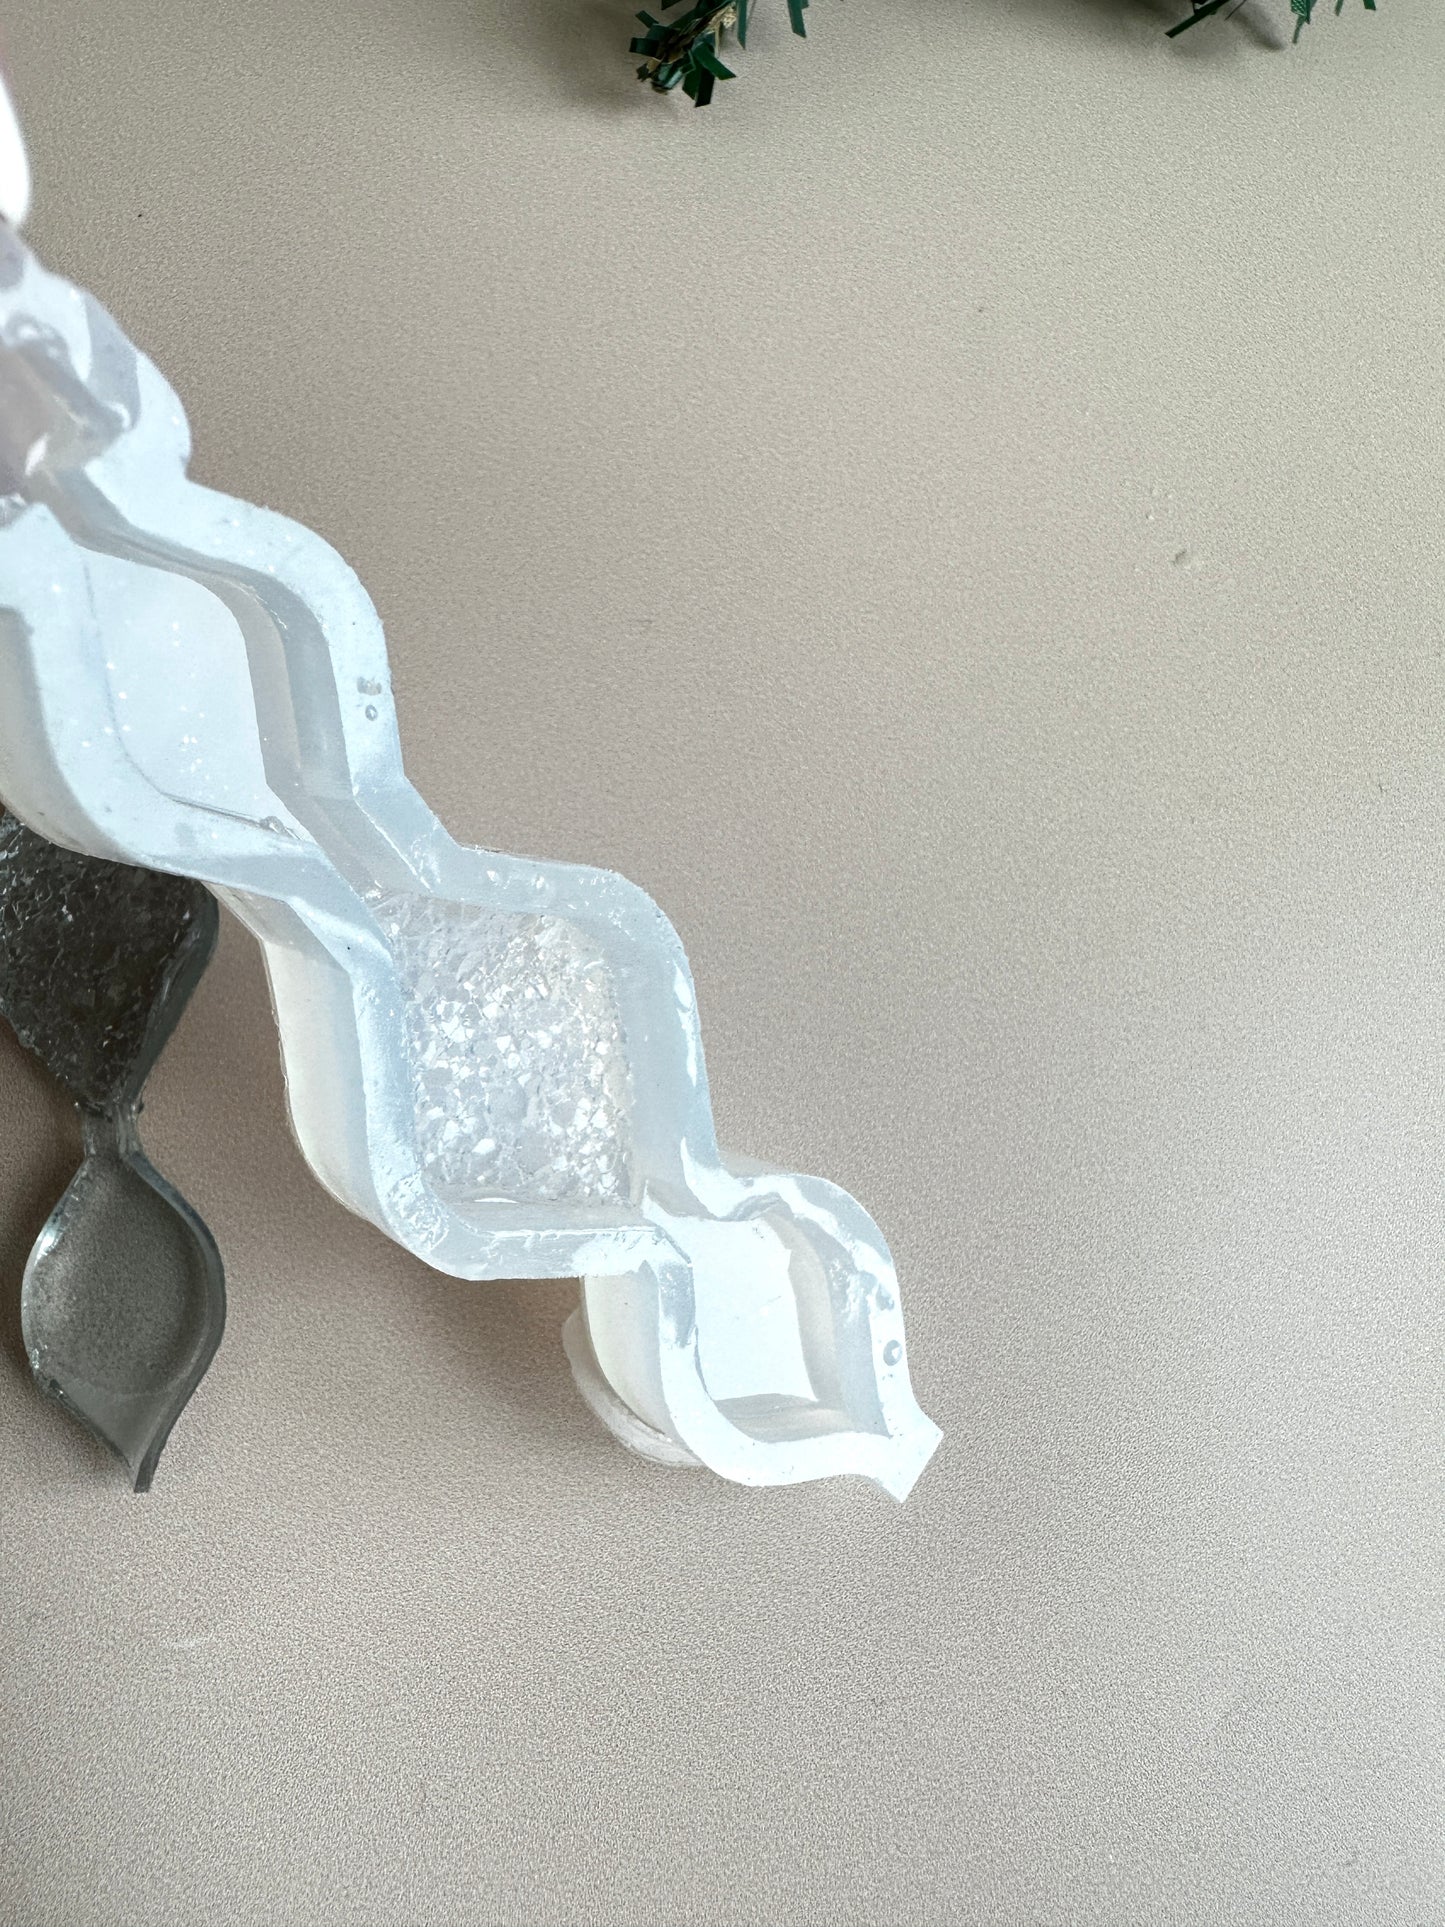 Silikonform für Weihnachtsbaumschmuck mit Kristallen – eiszapfenförmige Formen für Kunstharz-Bastelarbeiten – perfektes DIY-Weihnachtsdekor-Geschenk